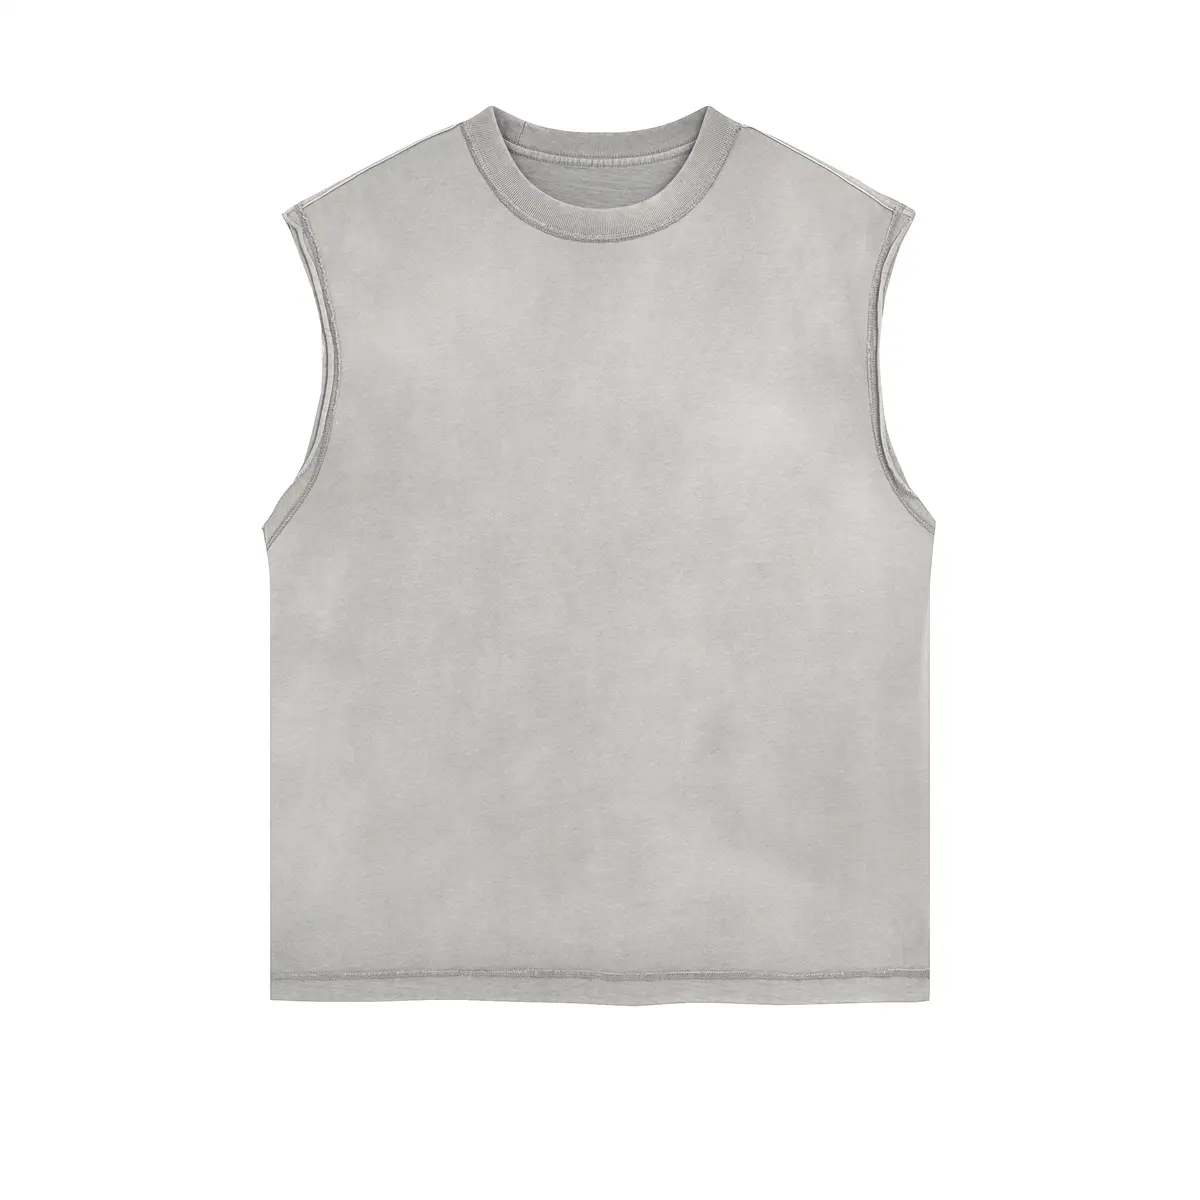 قمصان رجالي رياضية قطنية مخصصة للركض بدون أكمام ملائمة لعمل التمارين الرياضية والجيم للرجال للبيع بالجملة